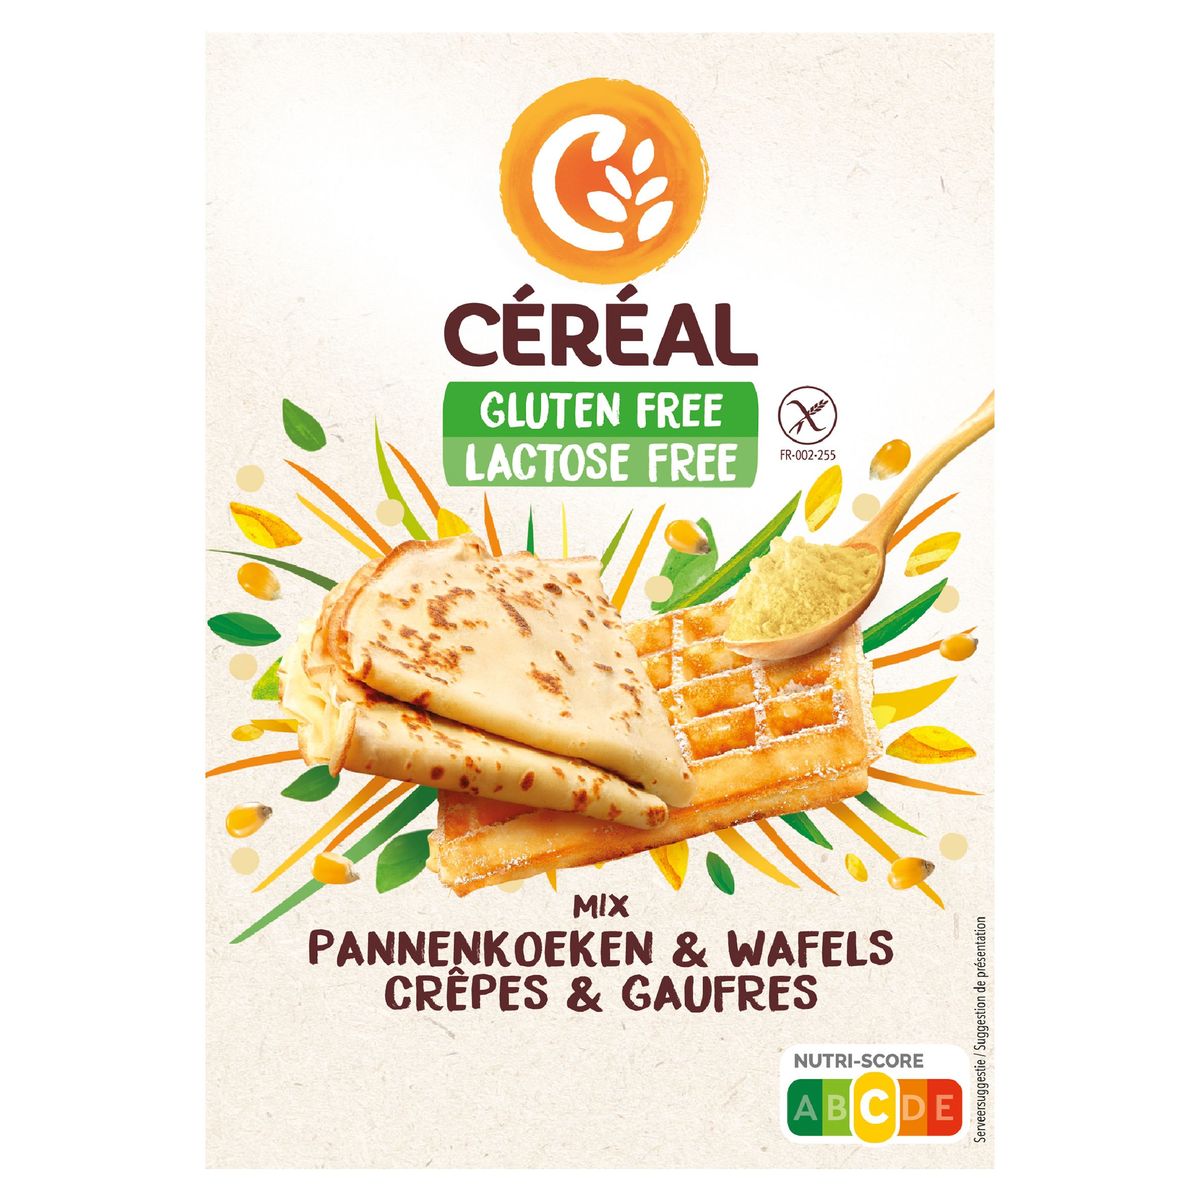 Céréal Glutenfree & Lactosefree Mix Pannenkoeken & Wafels 300 g